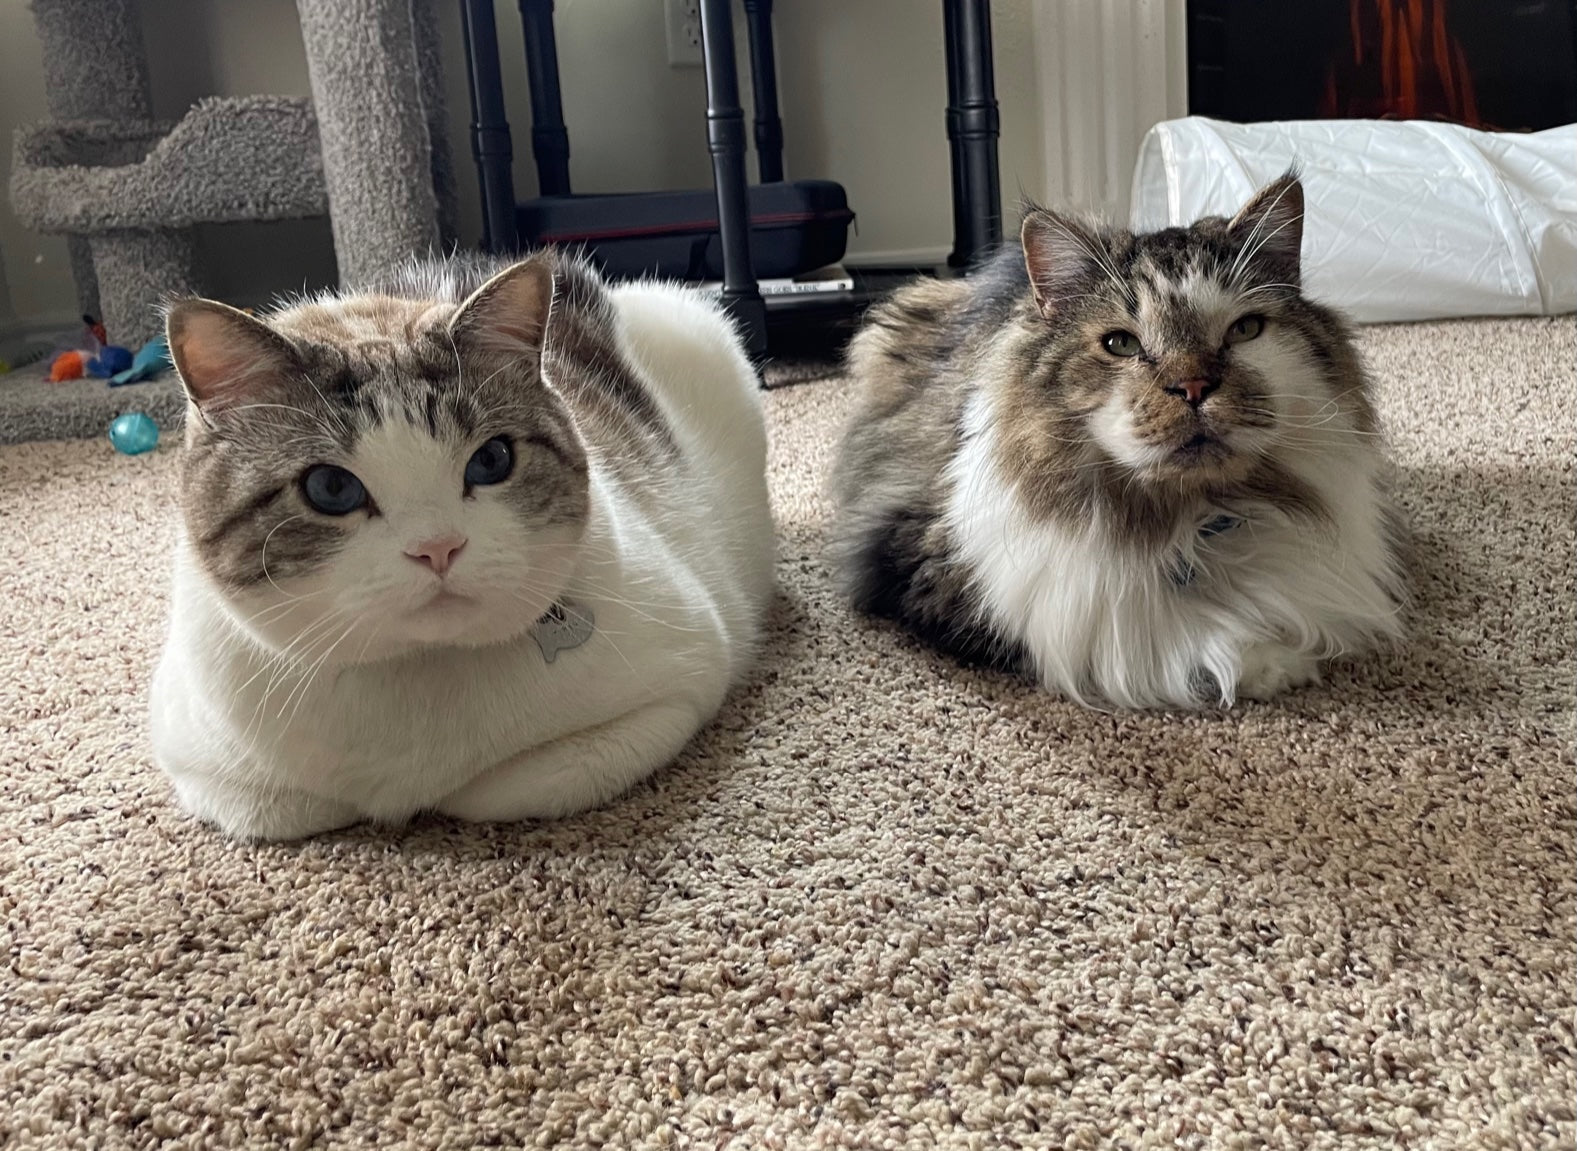 Indoor Cats vs. Outdoor Cats